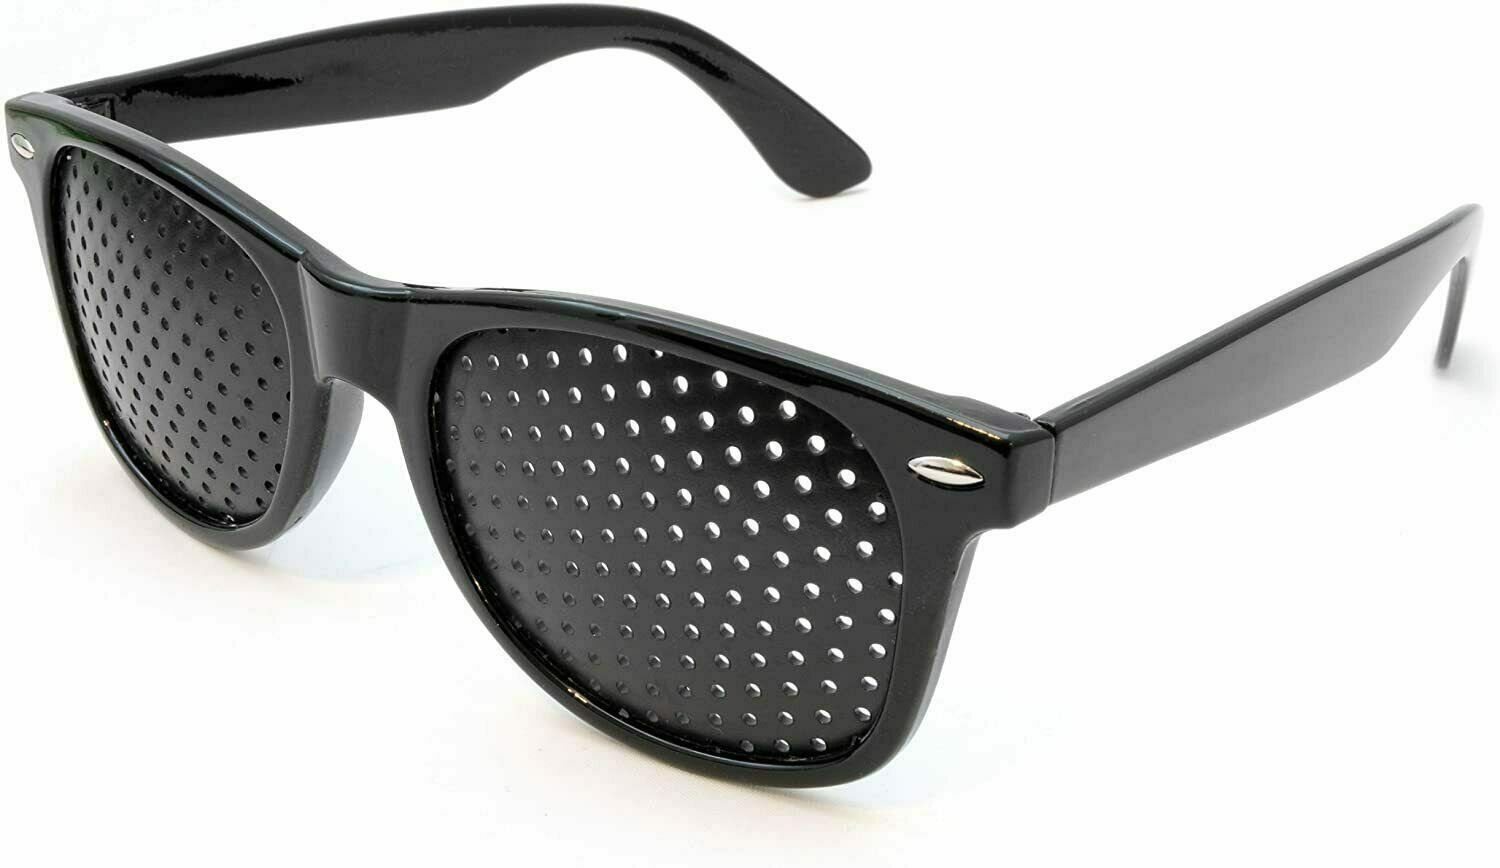 MAVURA Brille »Ganzoo Raster-Brille Loch Brille Gitter Augentraining  Entspannung Gitterbrille schwarz« online kaufen | OTTO